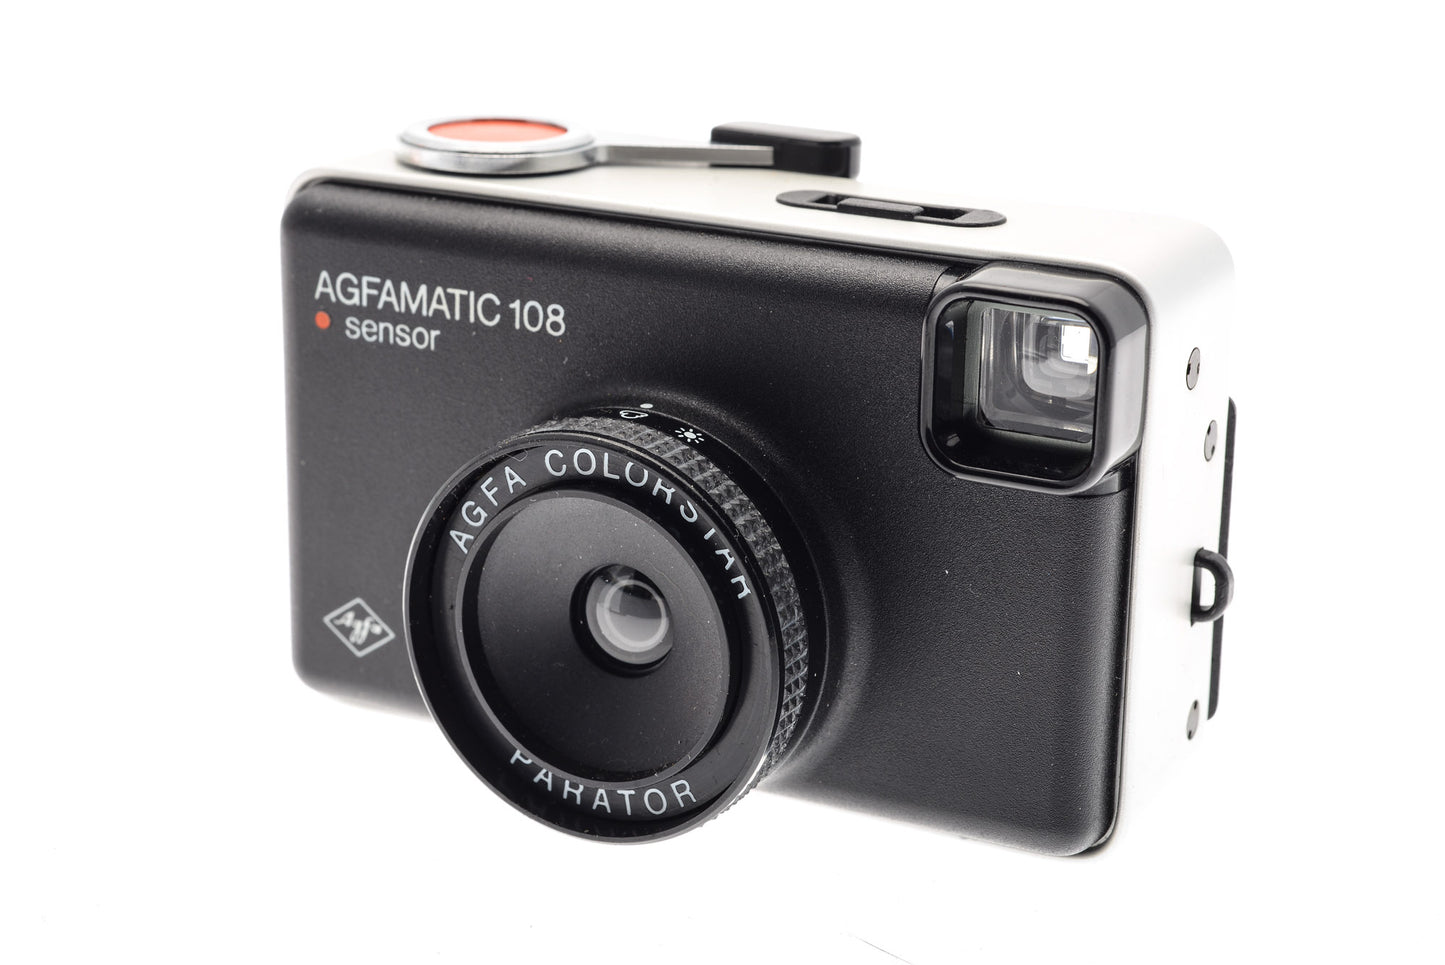 Agfa Agfamatic 108 Sensor - Camera